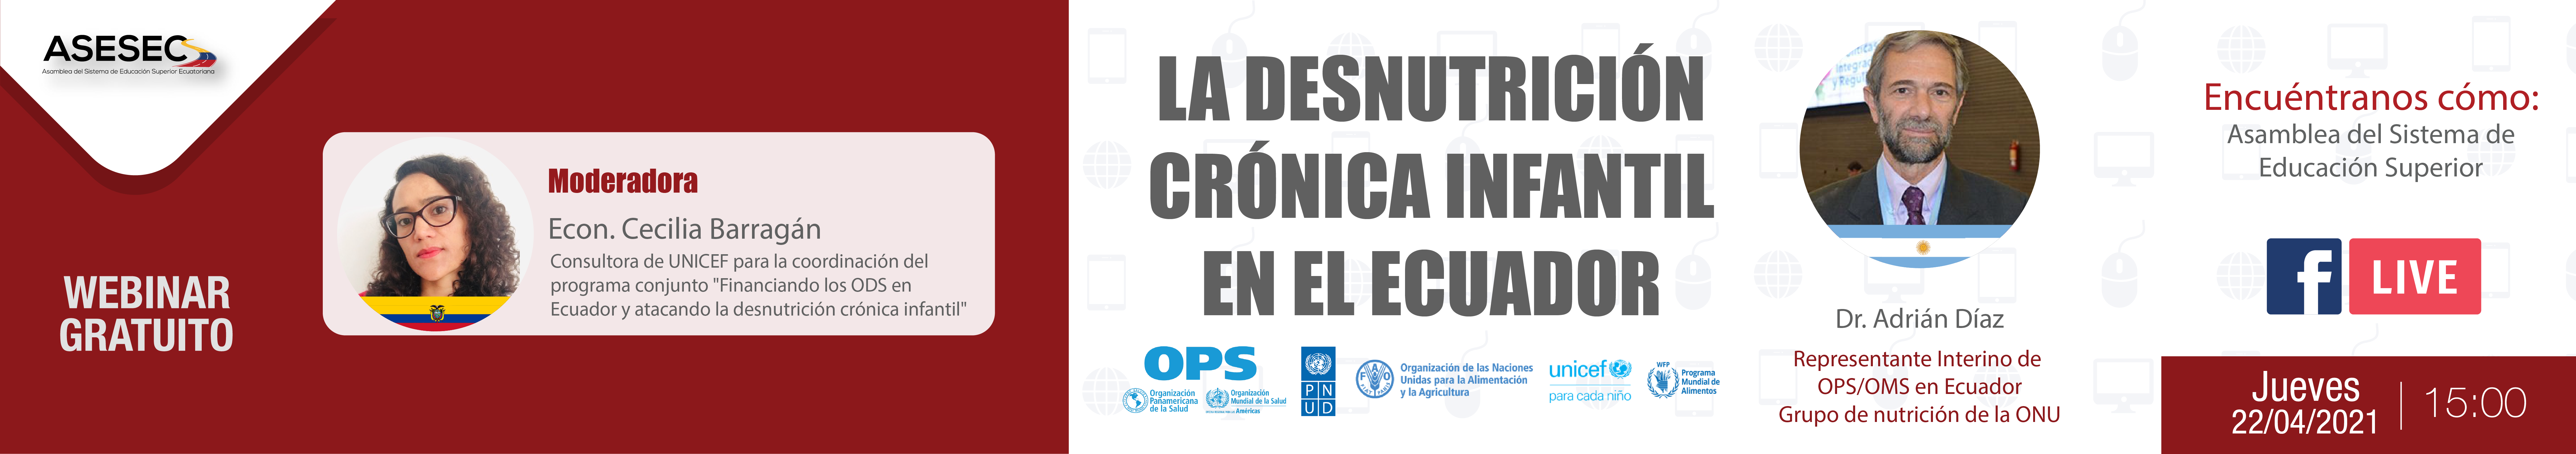 WEBINAR: LA DESNUTRICIÓN CRÓNICA INFANTIL EN EL ECUADOR